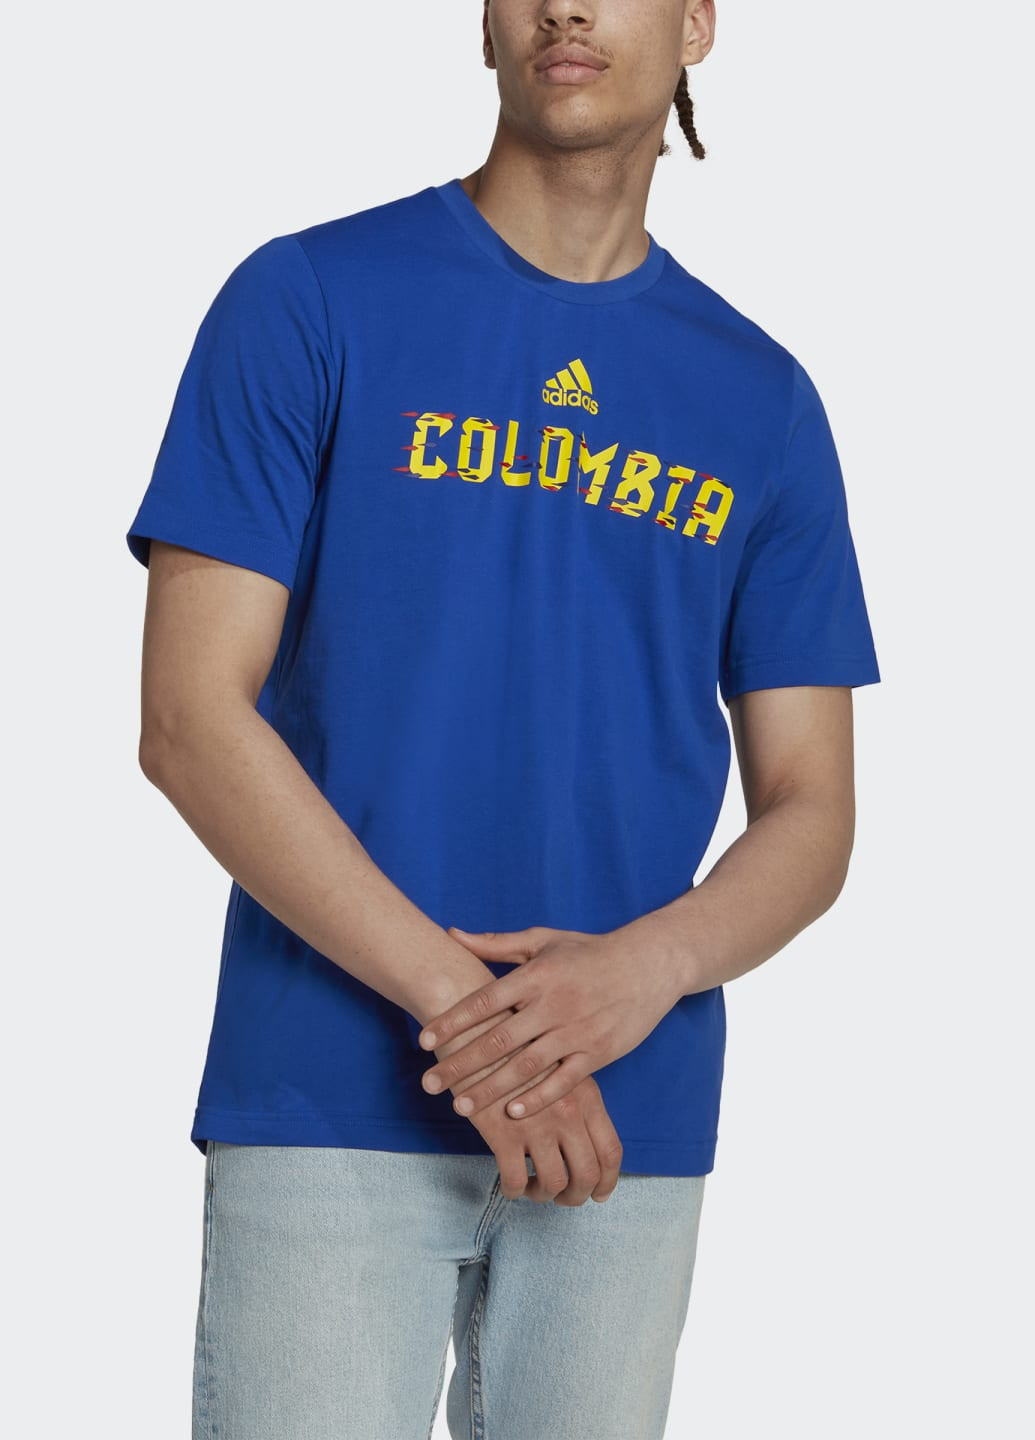 Синя футболка fifa world cup 2022™ colombia adidas